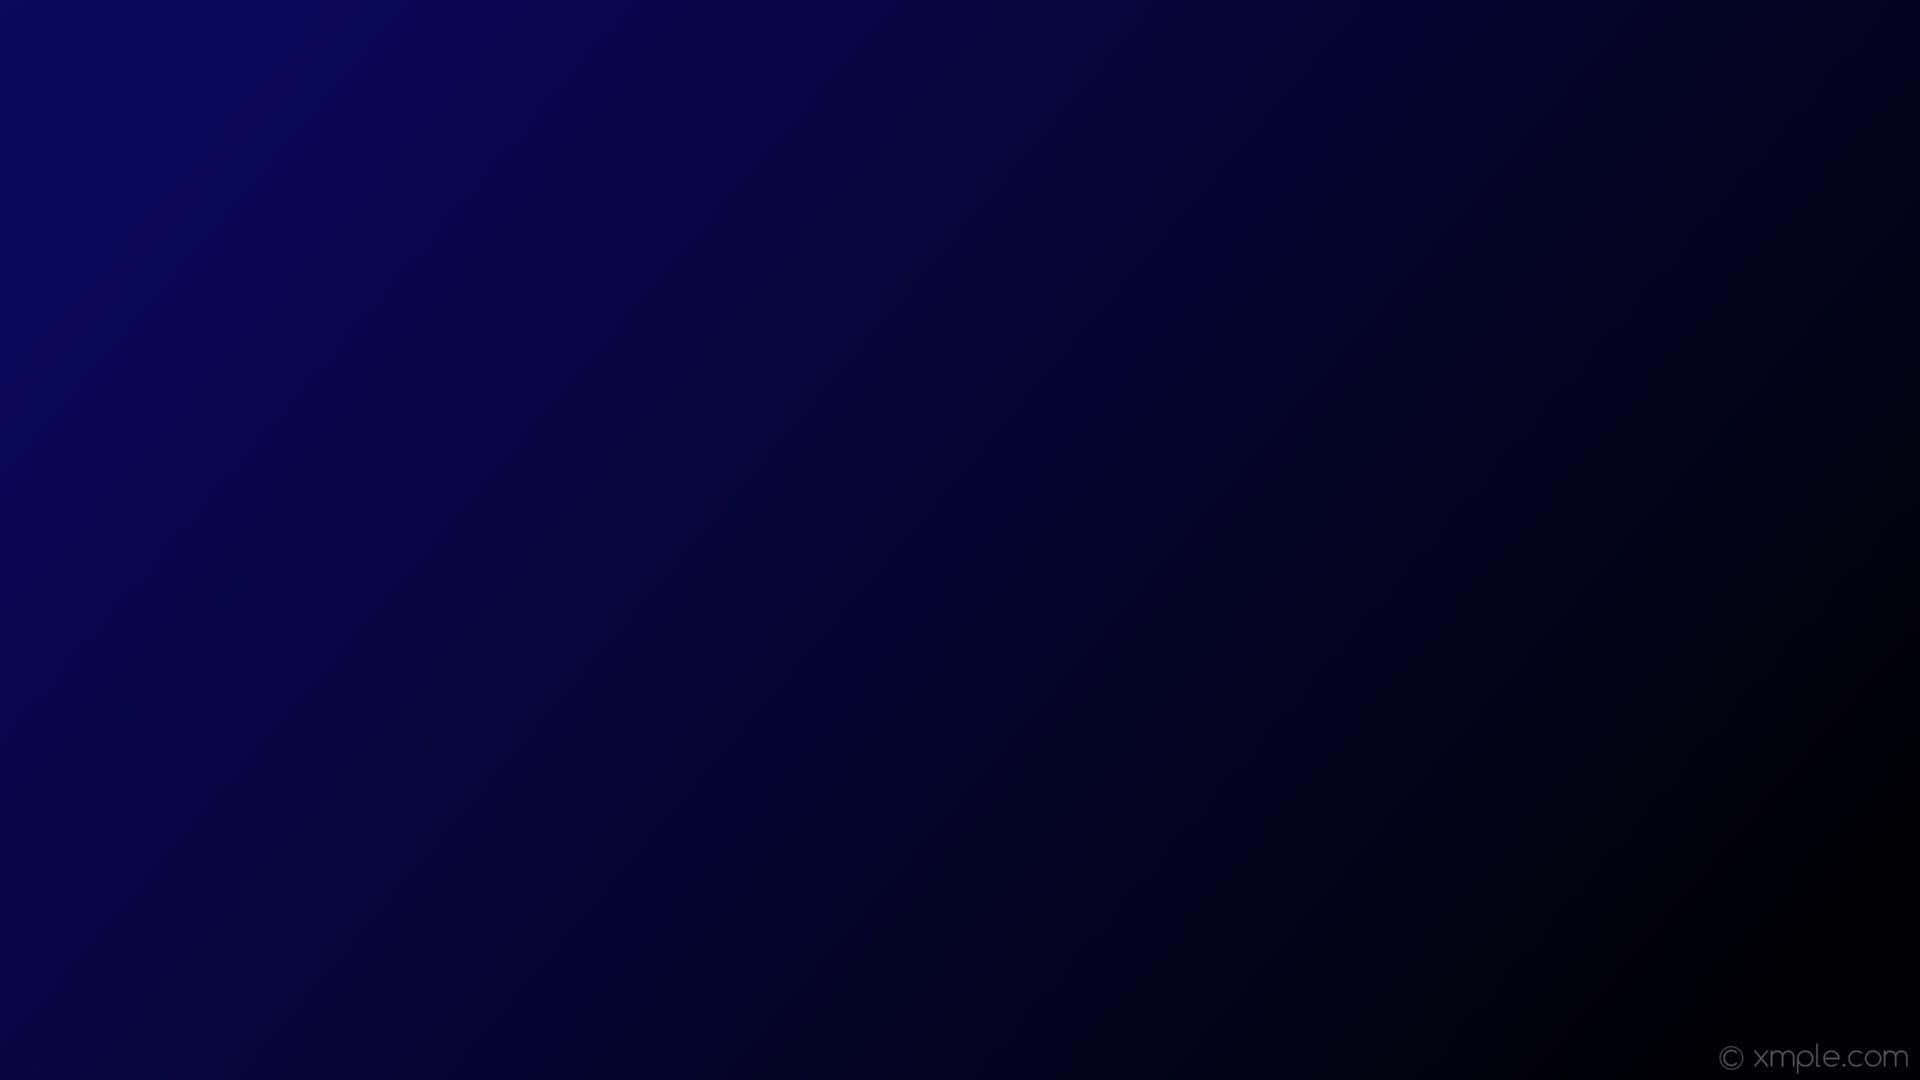 Gradienteoscuro Con Tonos Azul Marino. Fondo de pantalla